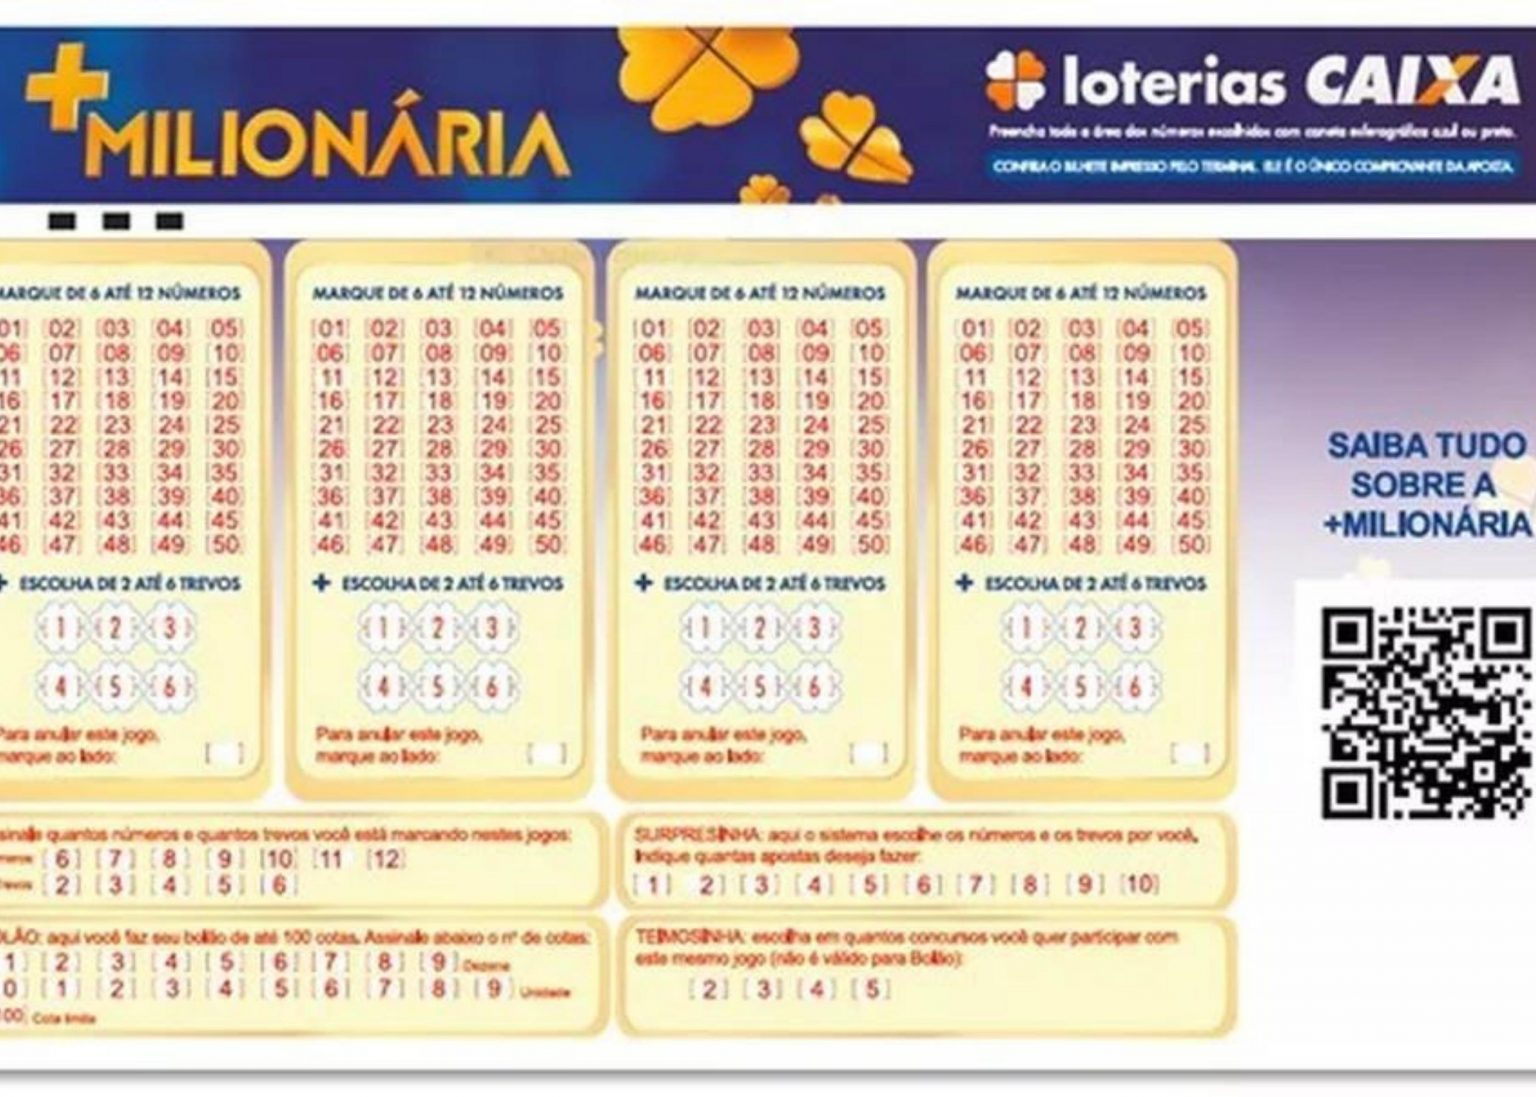 Resultado da loteria +Milionária de hoje, concurso 5 - sábado (25/06/22)